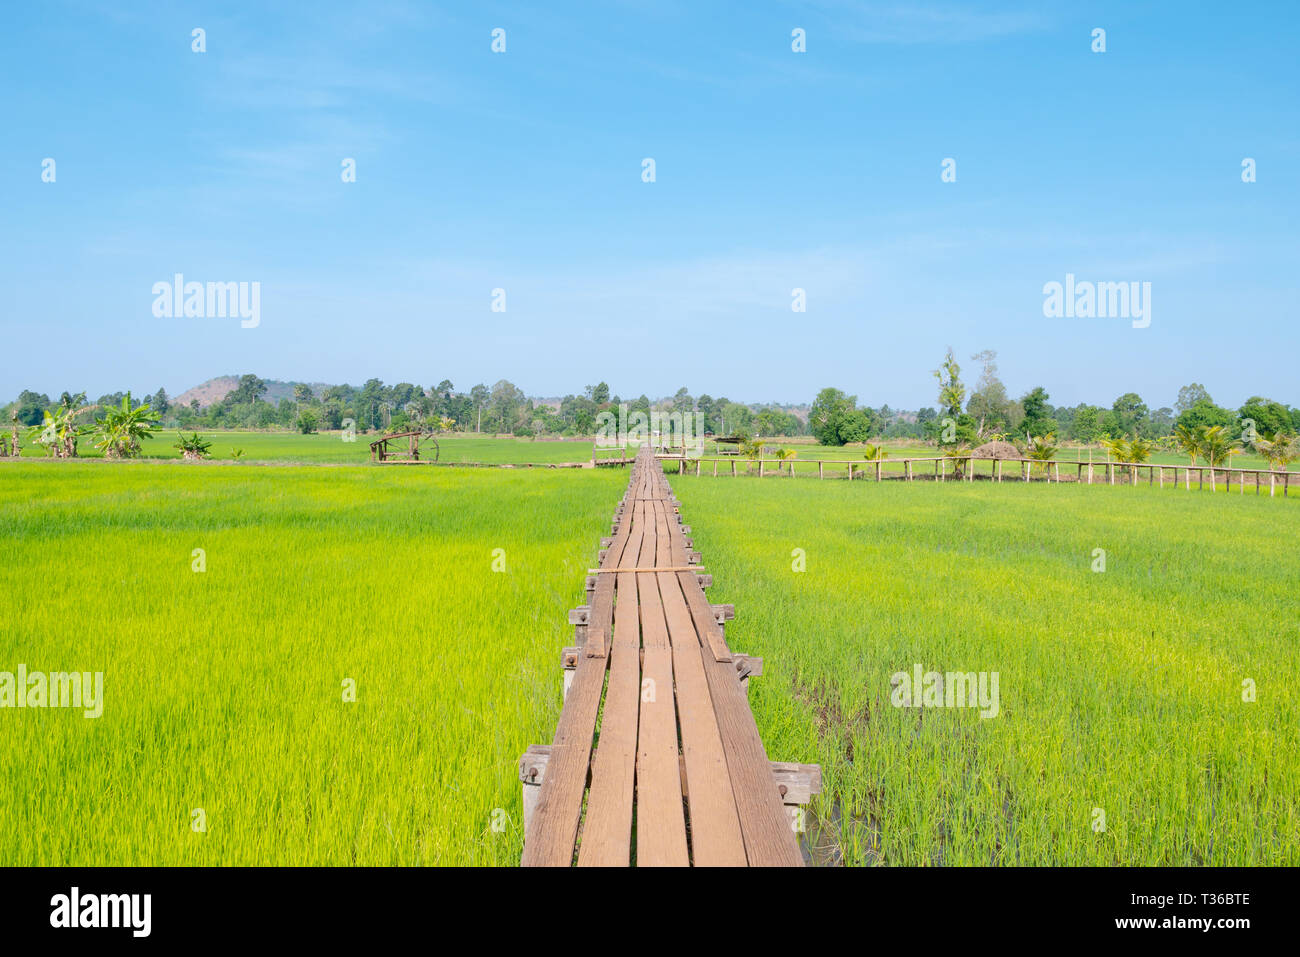 Die alte hölzerne Brücke erstreckt sich in den Reisfeldern. Landschaften grüne Wiese mit blauen Himmel und Holz Gehweg. Stockfoto